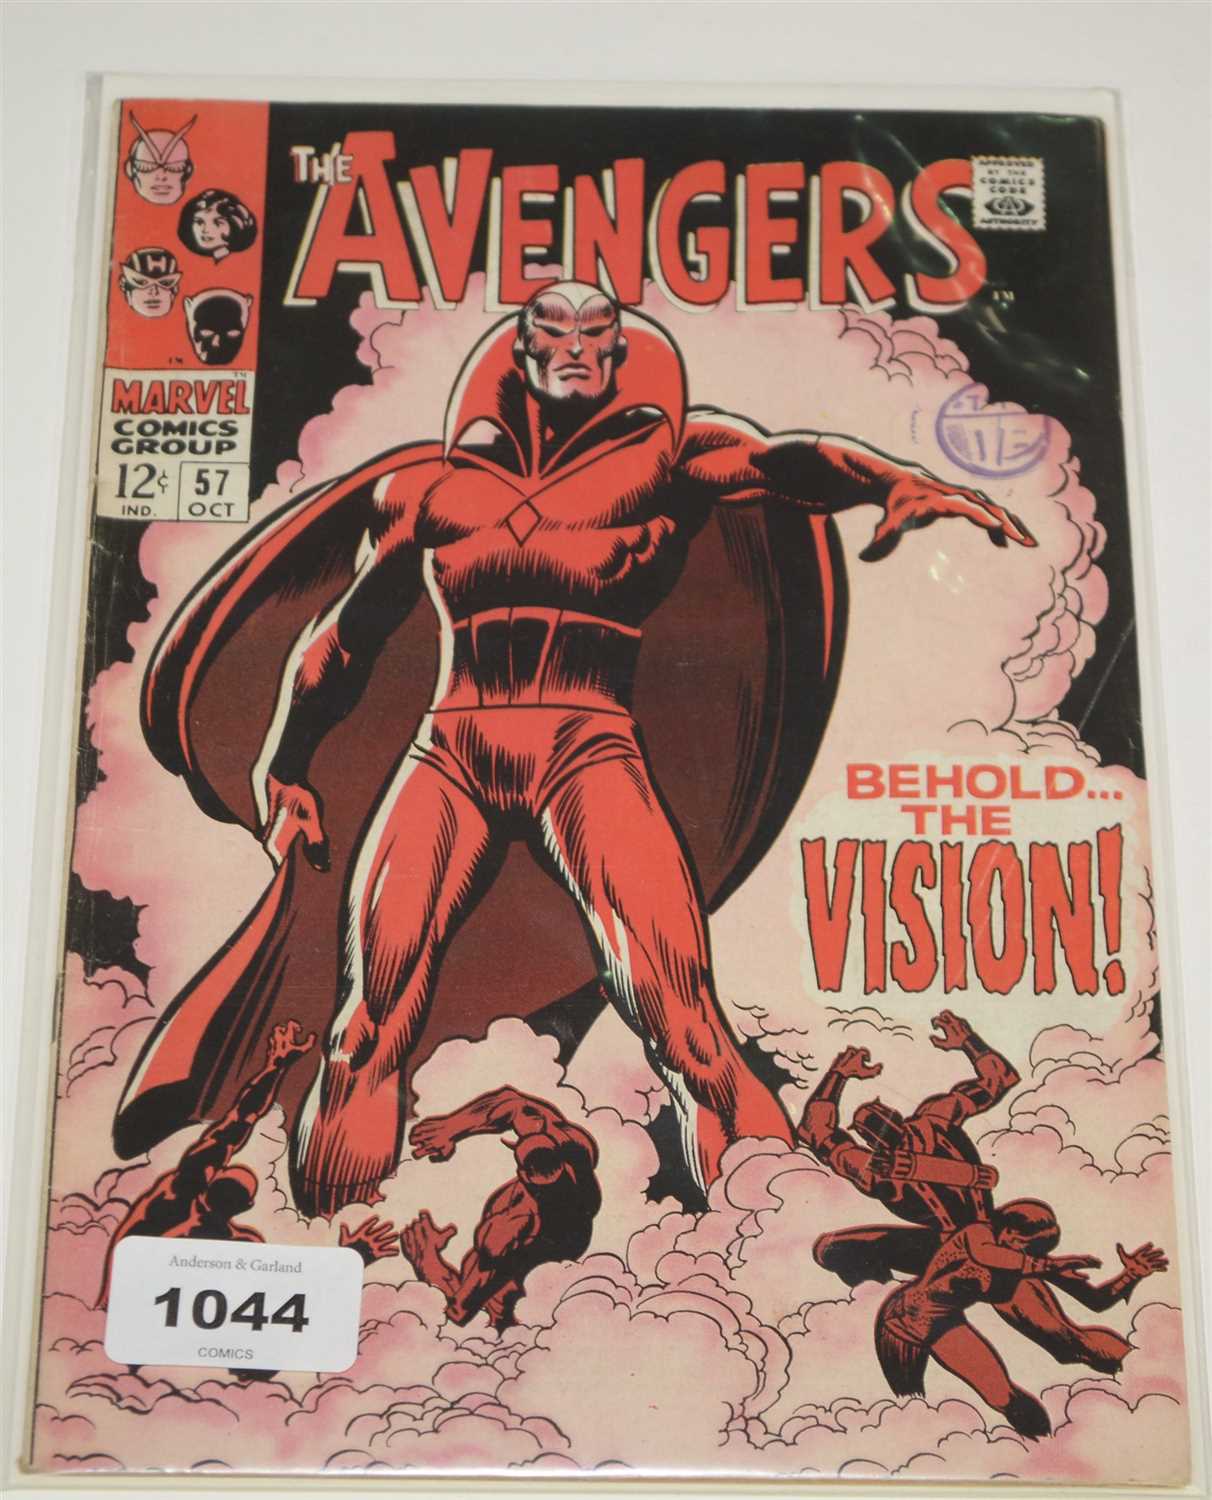 Lot 1044 - The Avengers Comics